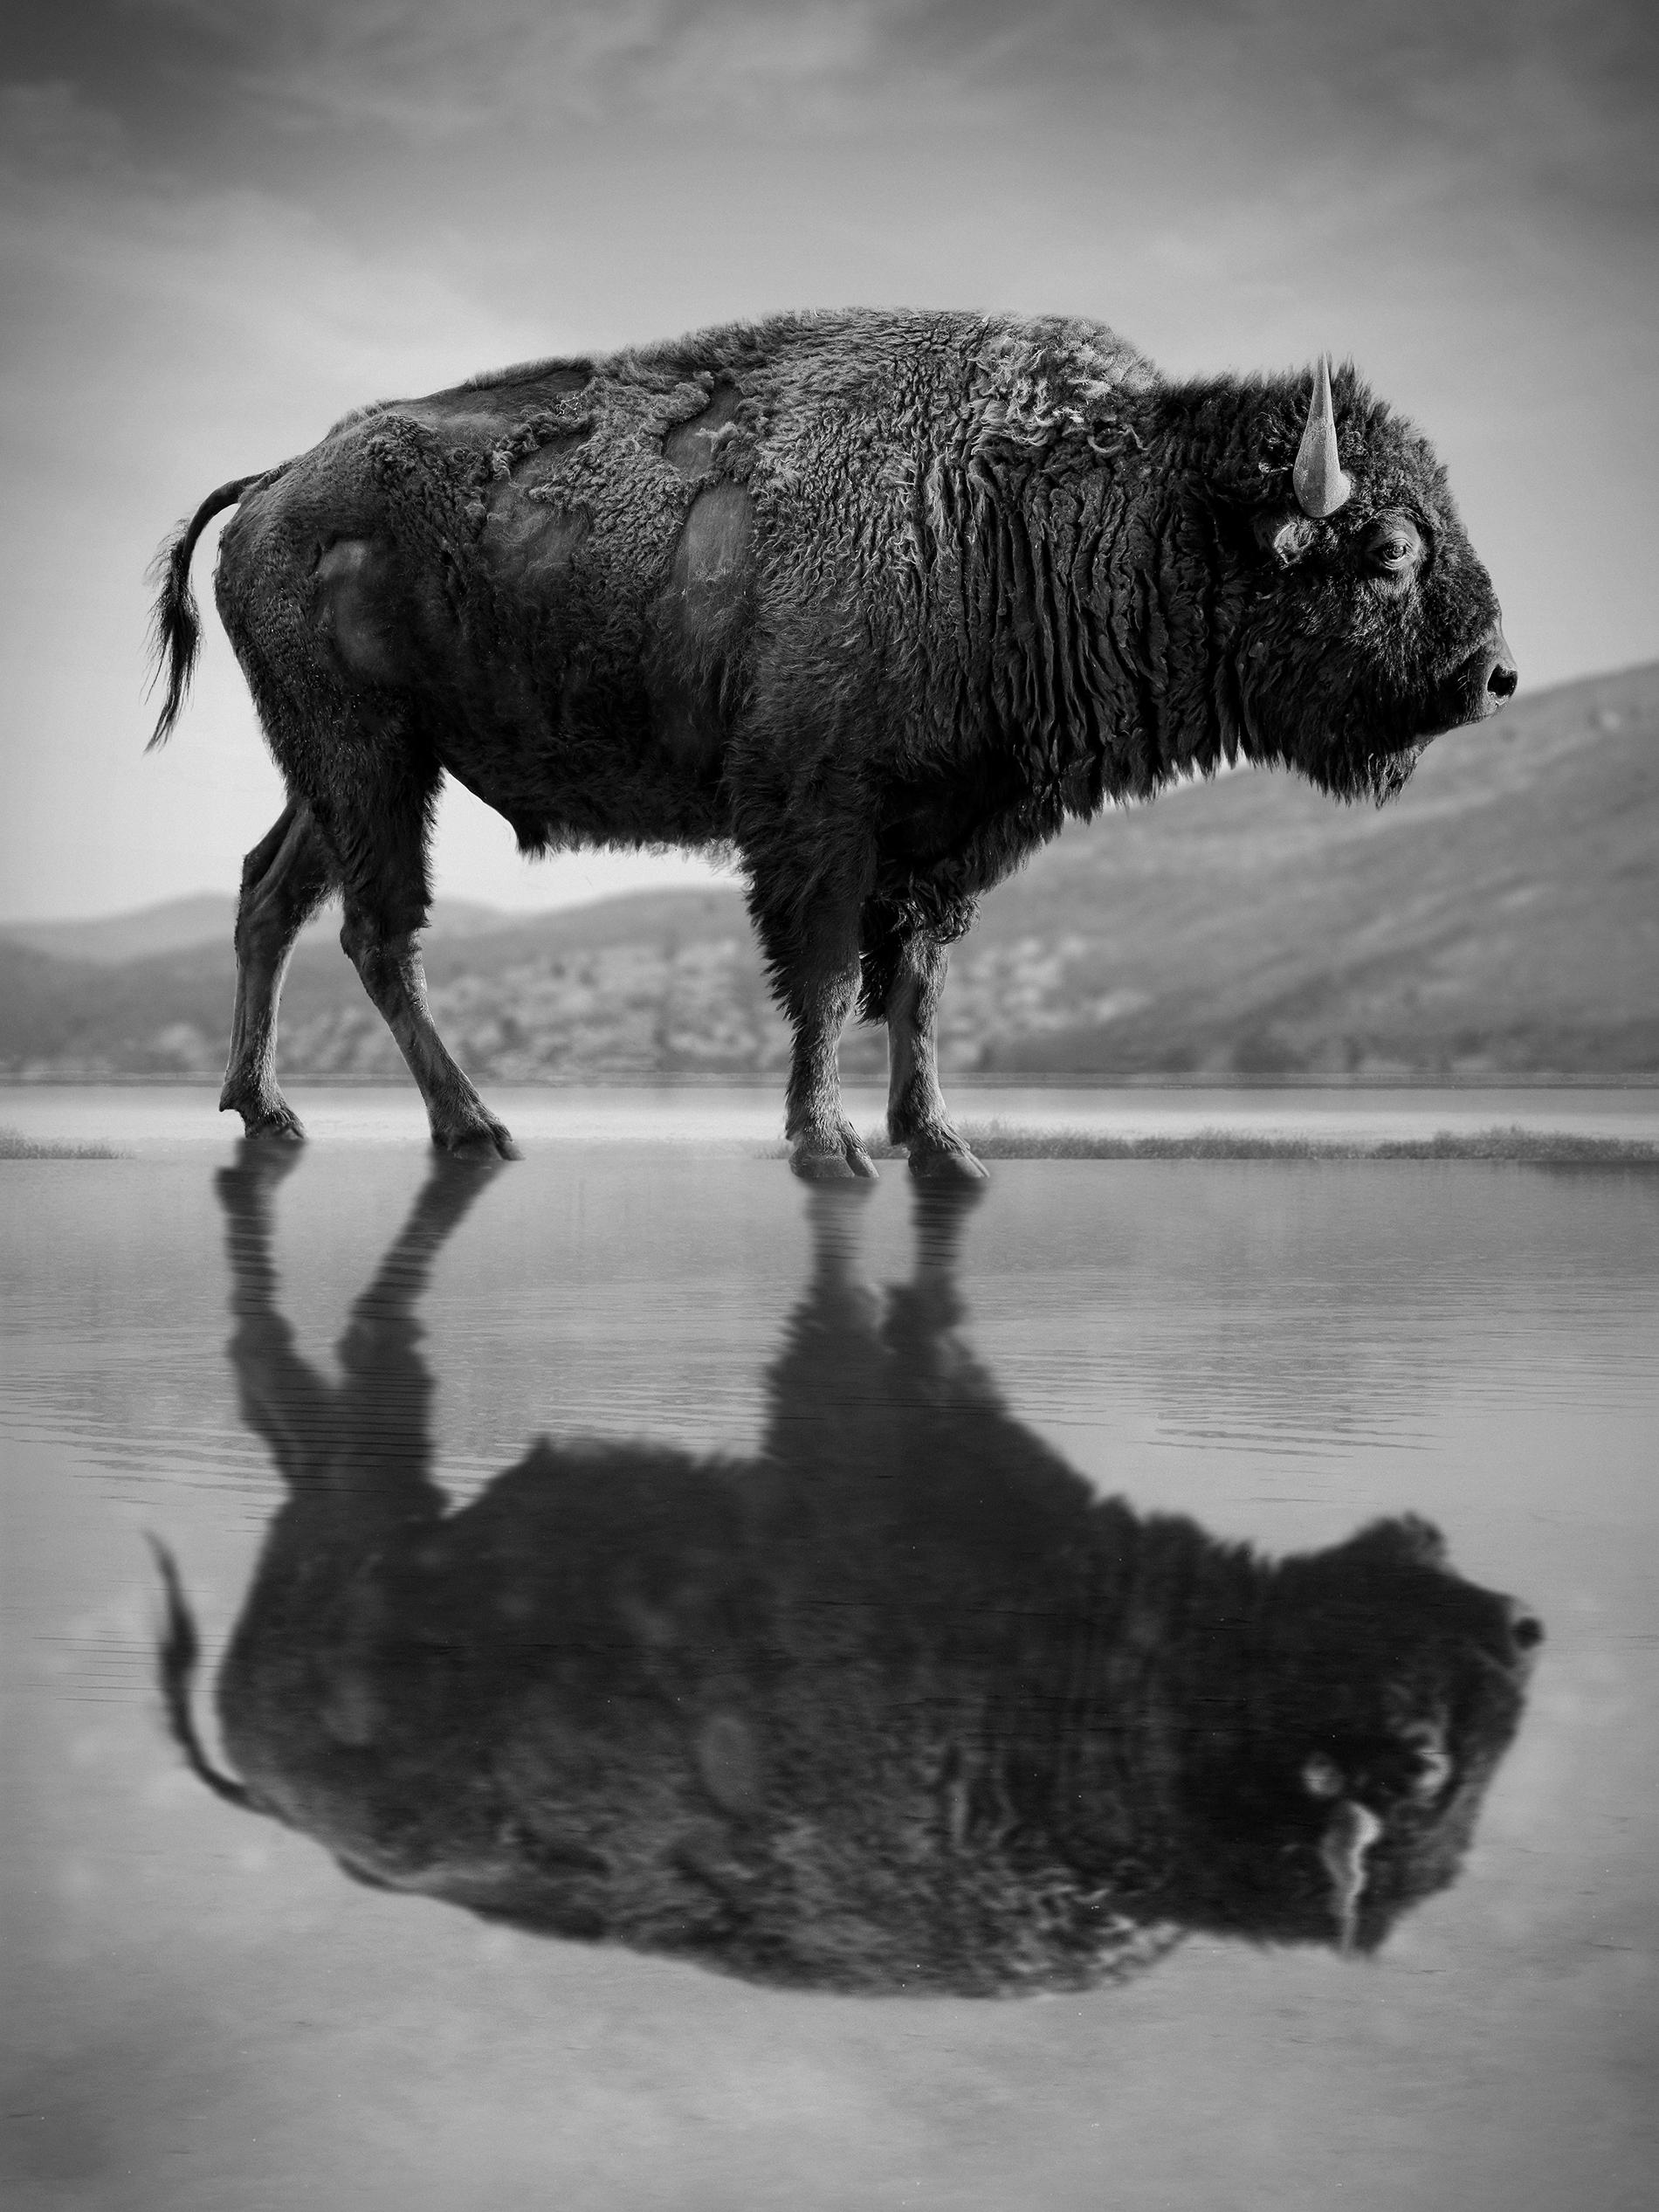 Black and White Photograph Shane Russeck - « Old World » 40x28  Photographie Bison Buffalo en noir et blanc non signée 